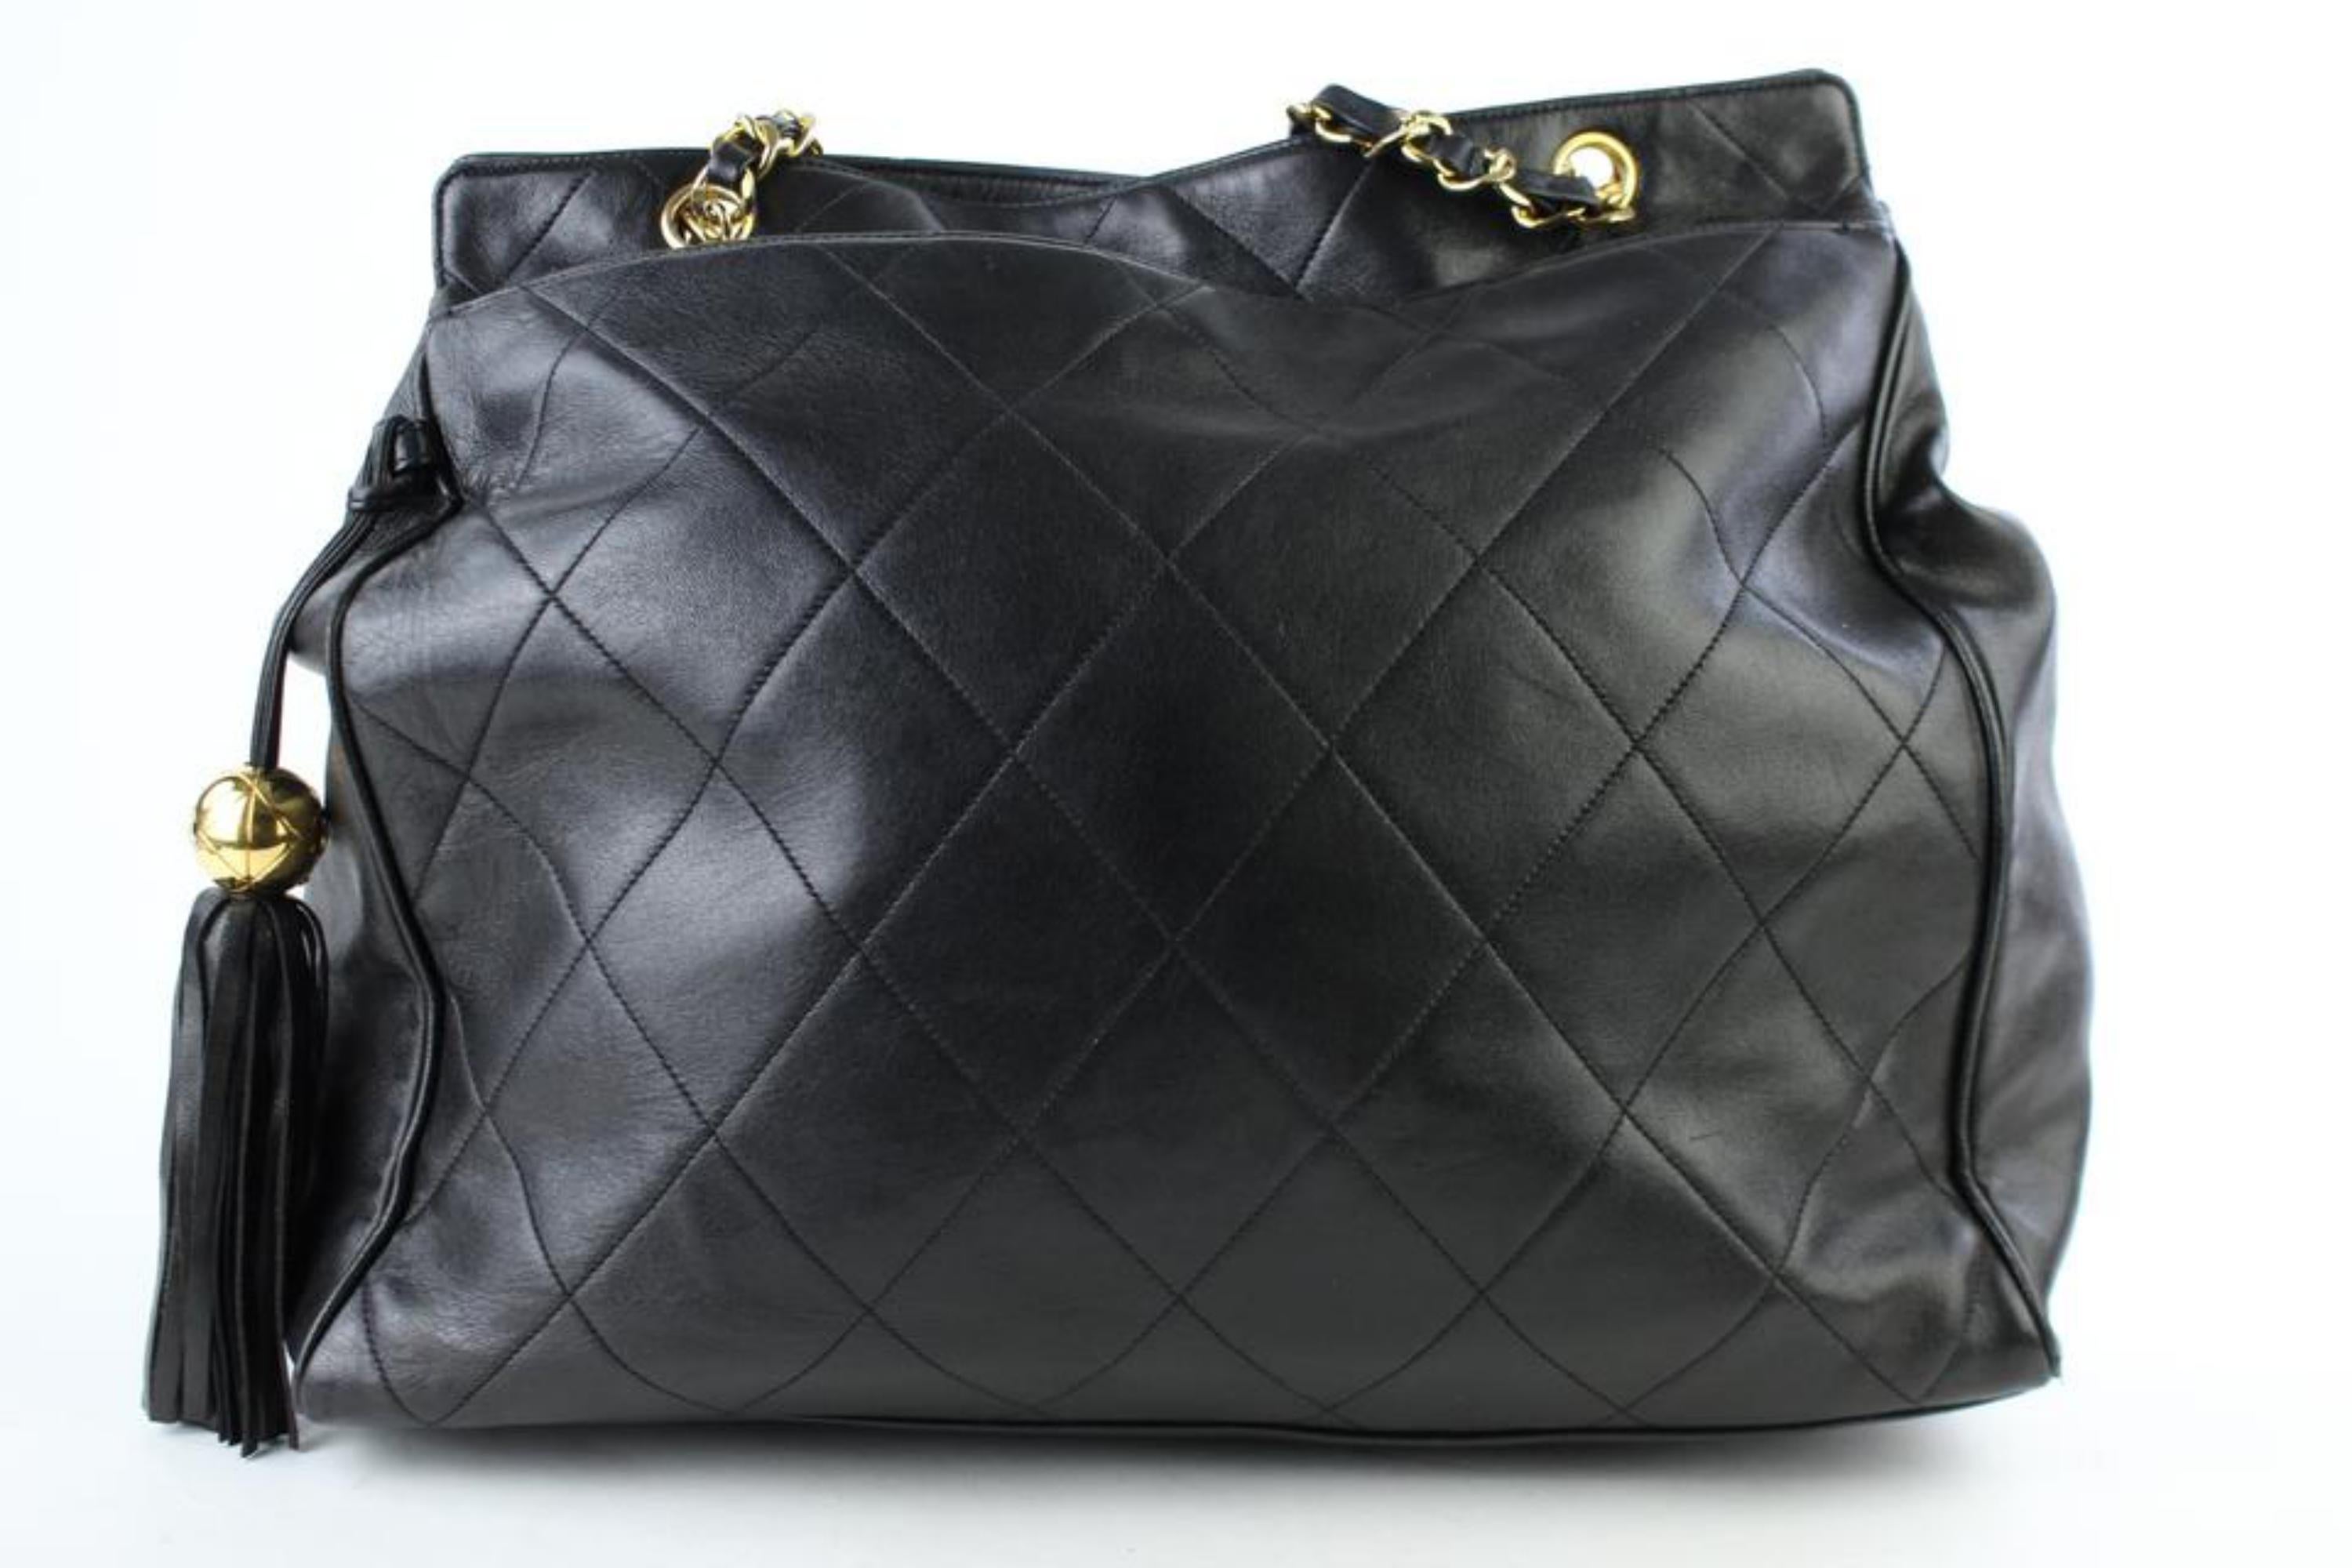 Chanel Quilted Lambskin Fringe Tassle Tote 221807 Black Leather Shoulder Bag For Sale 4